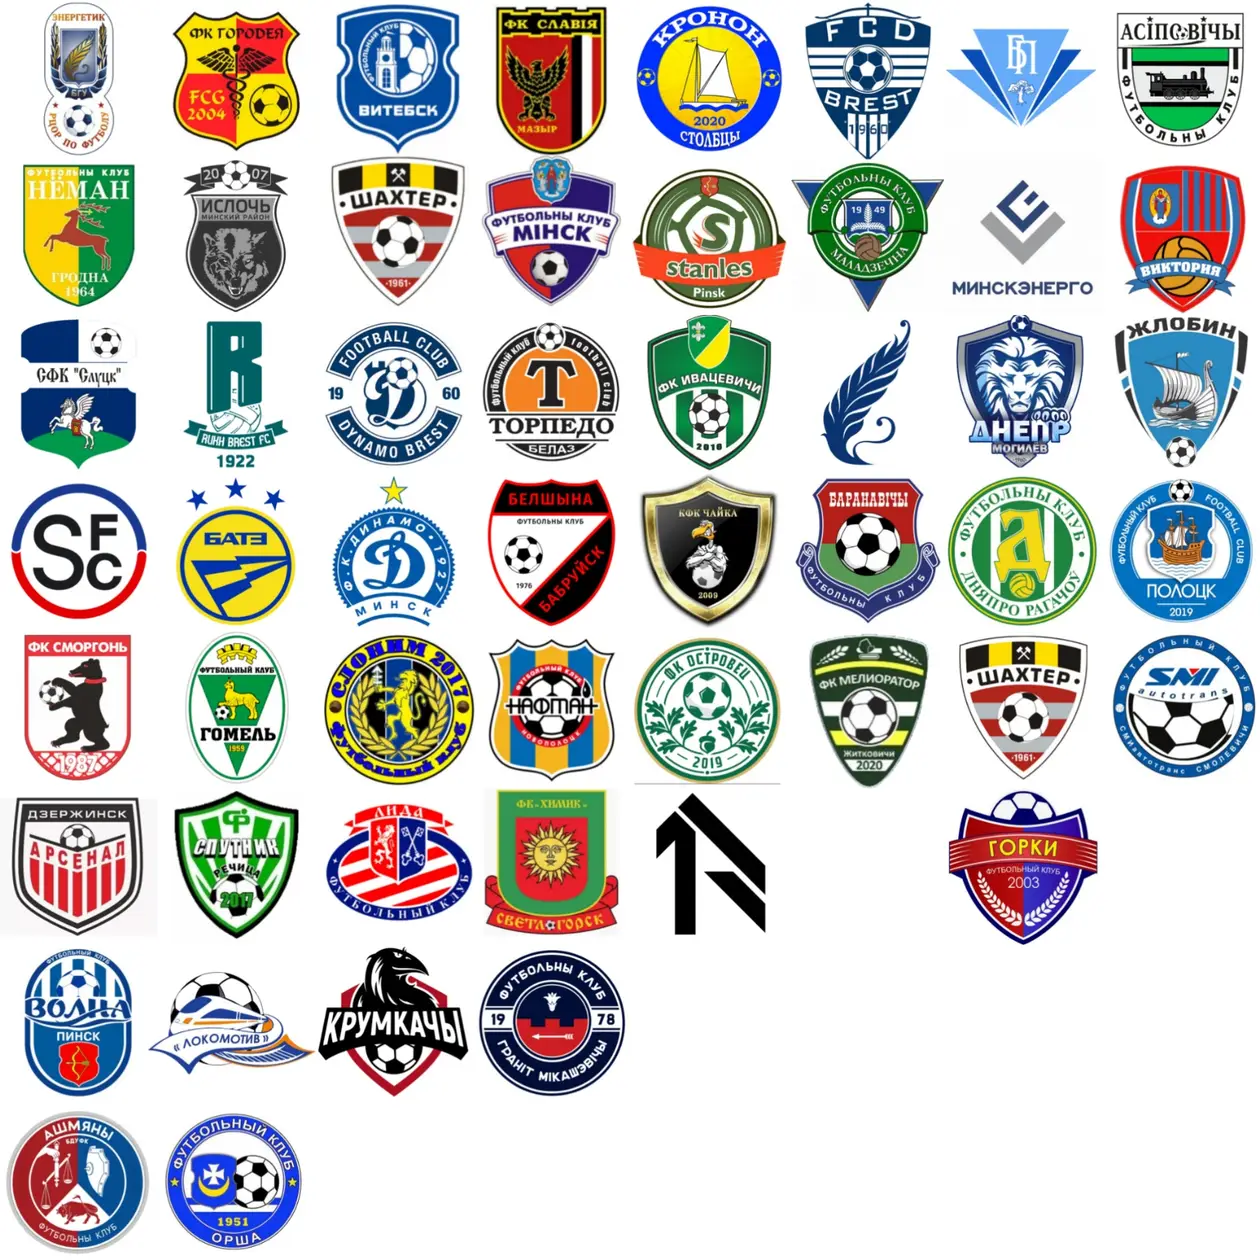 Крик души дизайнера или что не так с логотипами белорусских футбольных клубов